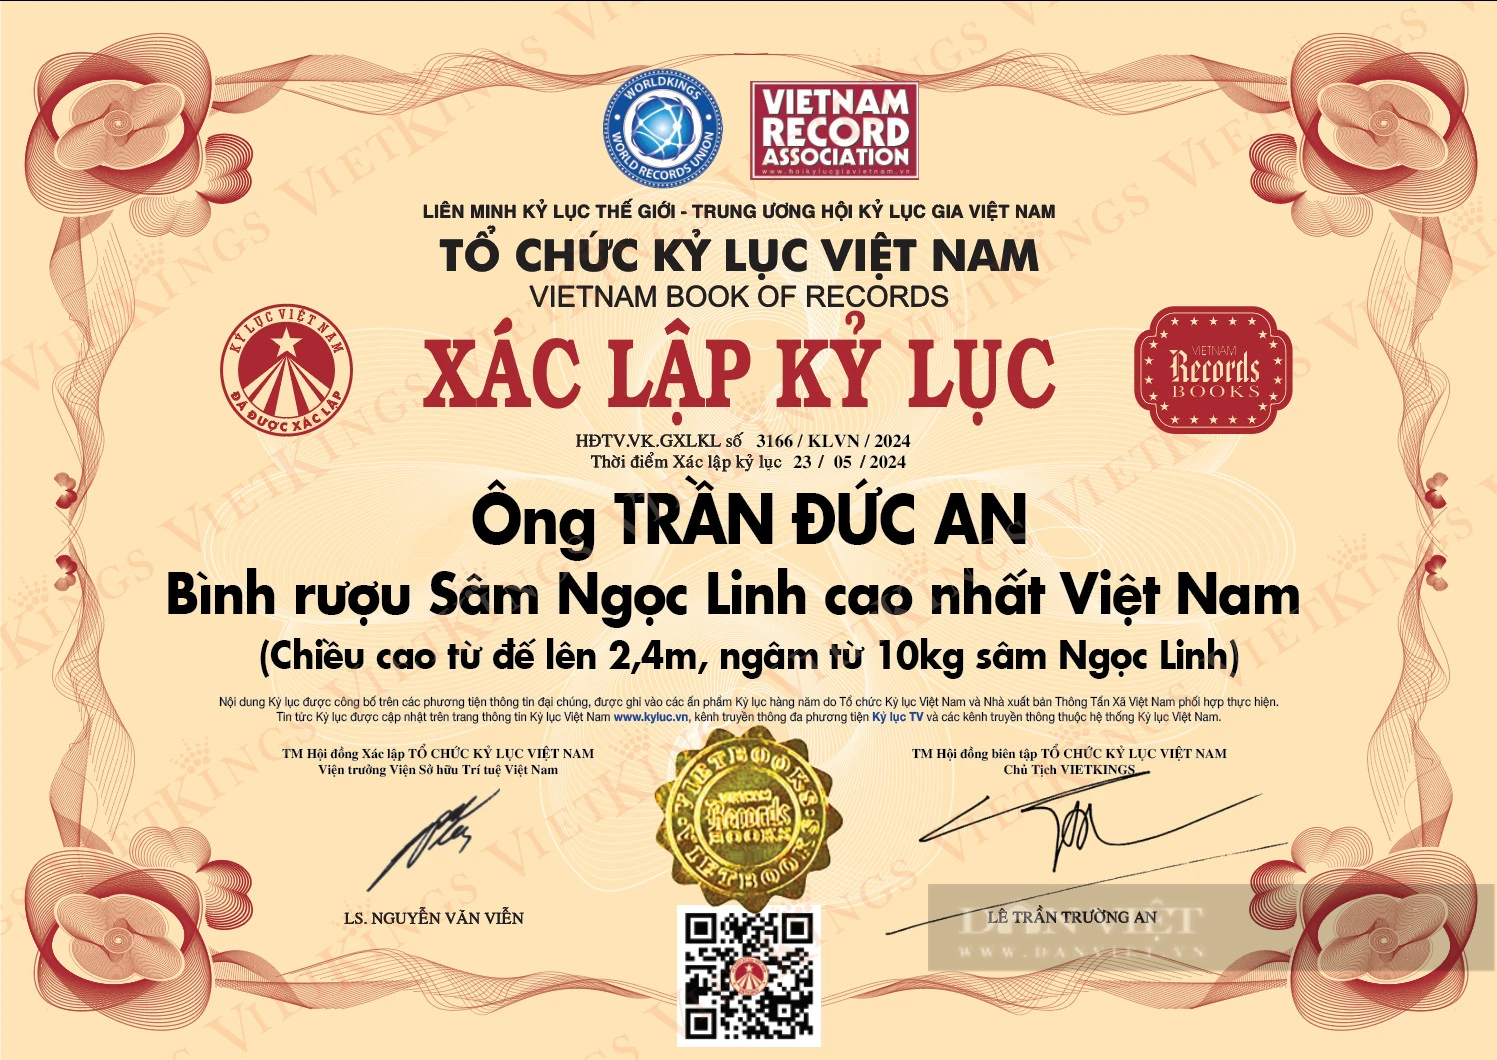 Bình rượu cao 2,4m, ngâm 10kg sâm Ngọc Linh được công nhận kỷ lục Việt Nam- Ảnh 2.